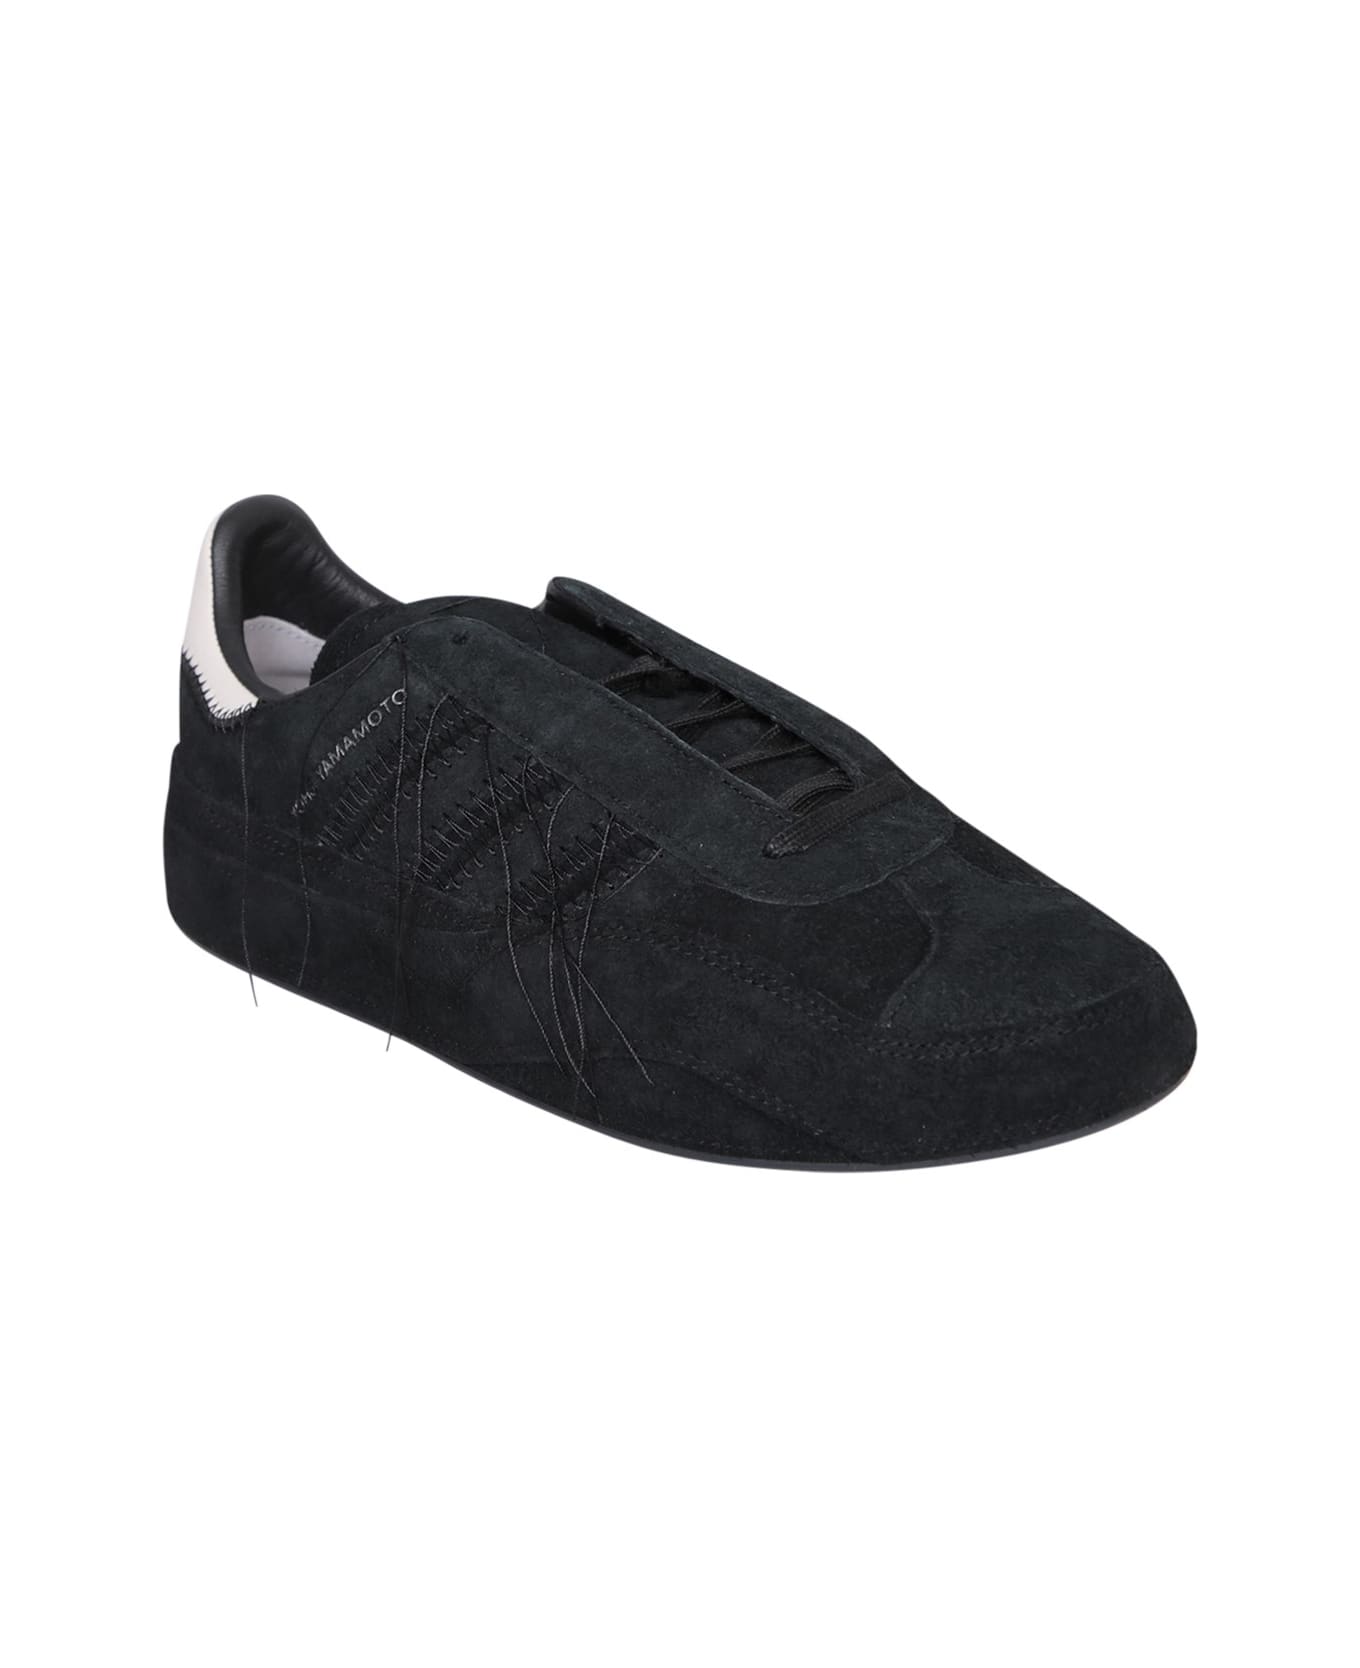 Y-3 Gazelle Black Sneakers - Black